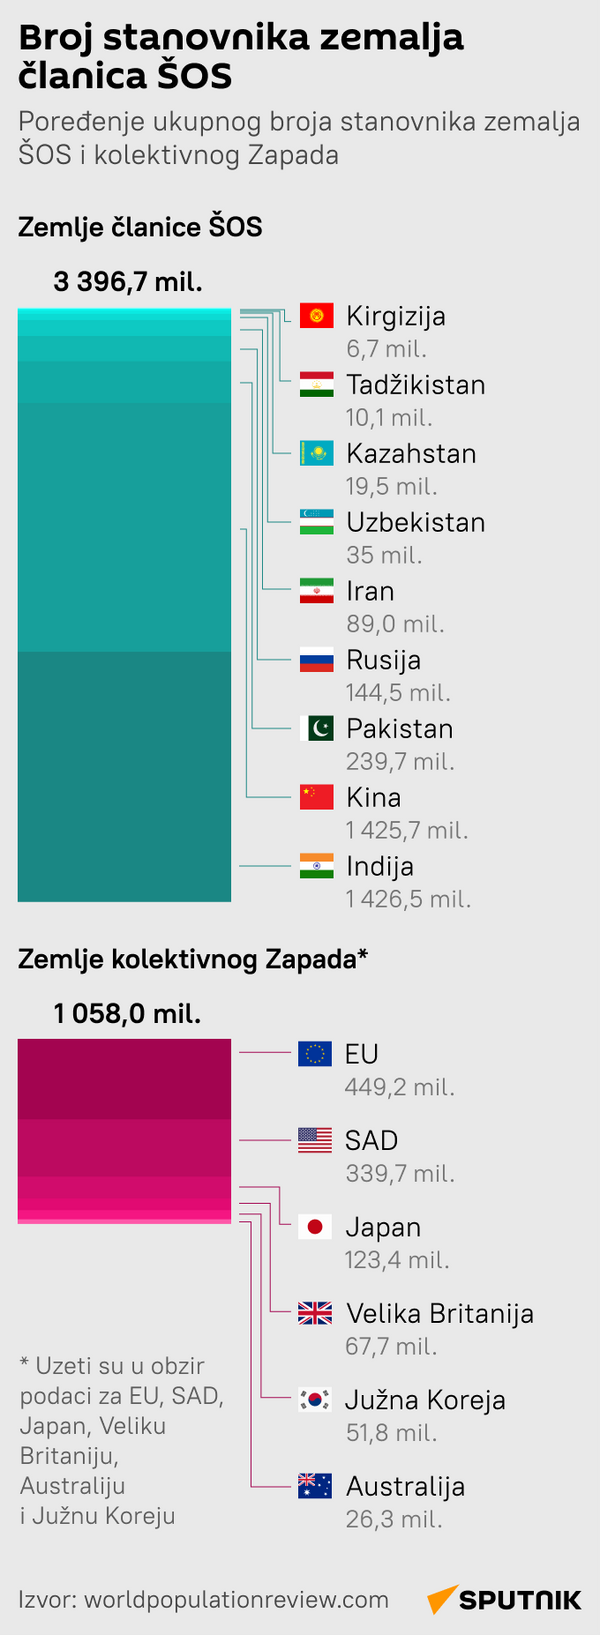 Infografika Broj stanovnika zemalja članica ŠOS Latinica mob - Sputnik Srbija